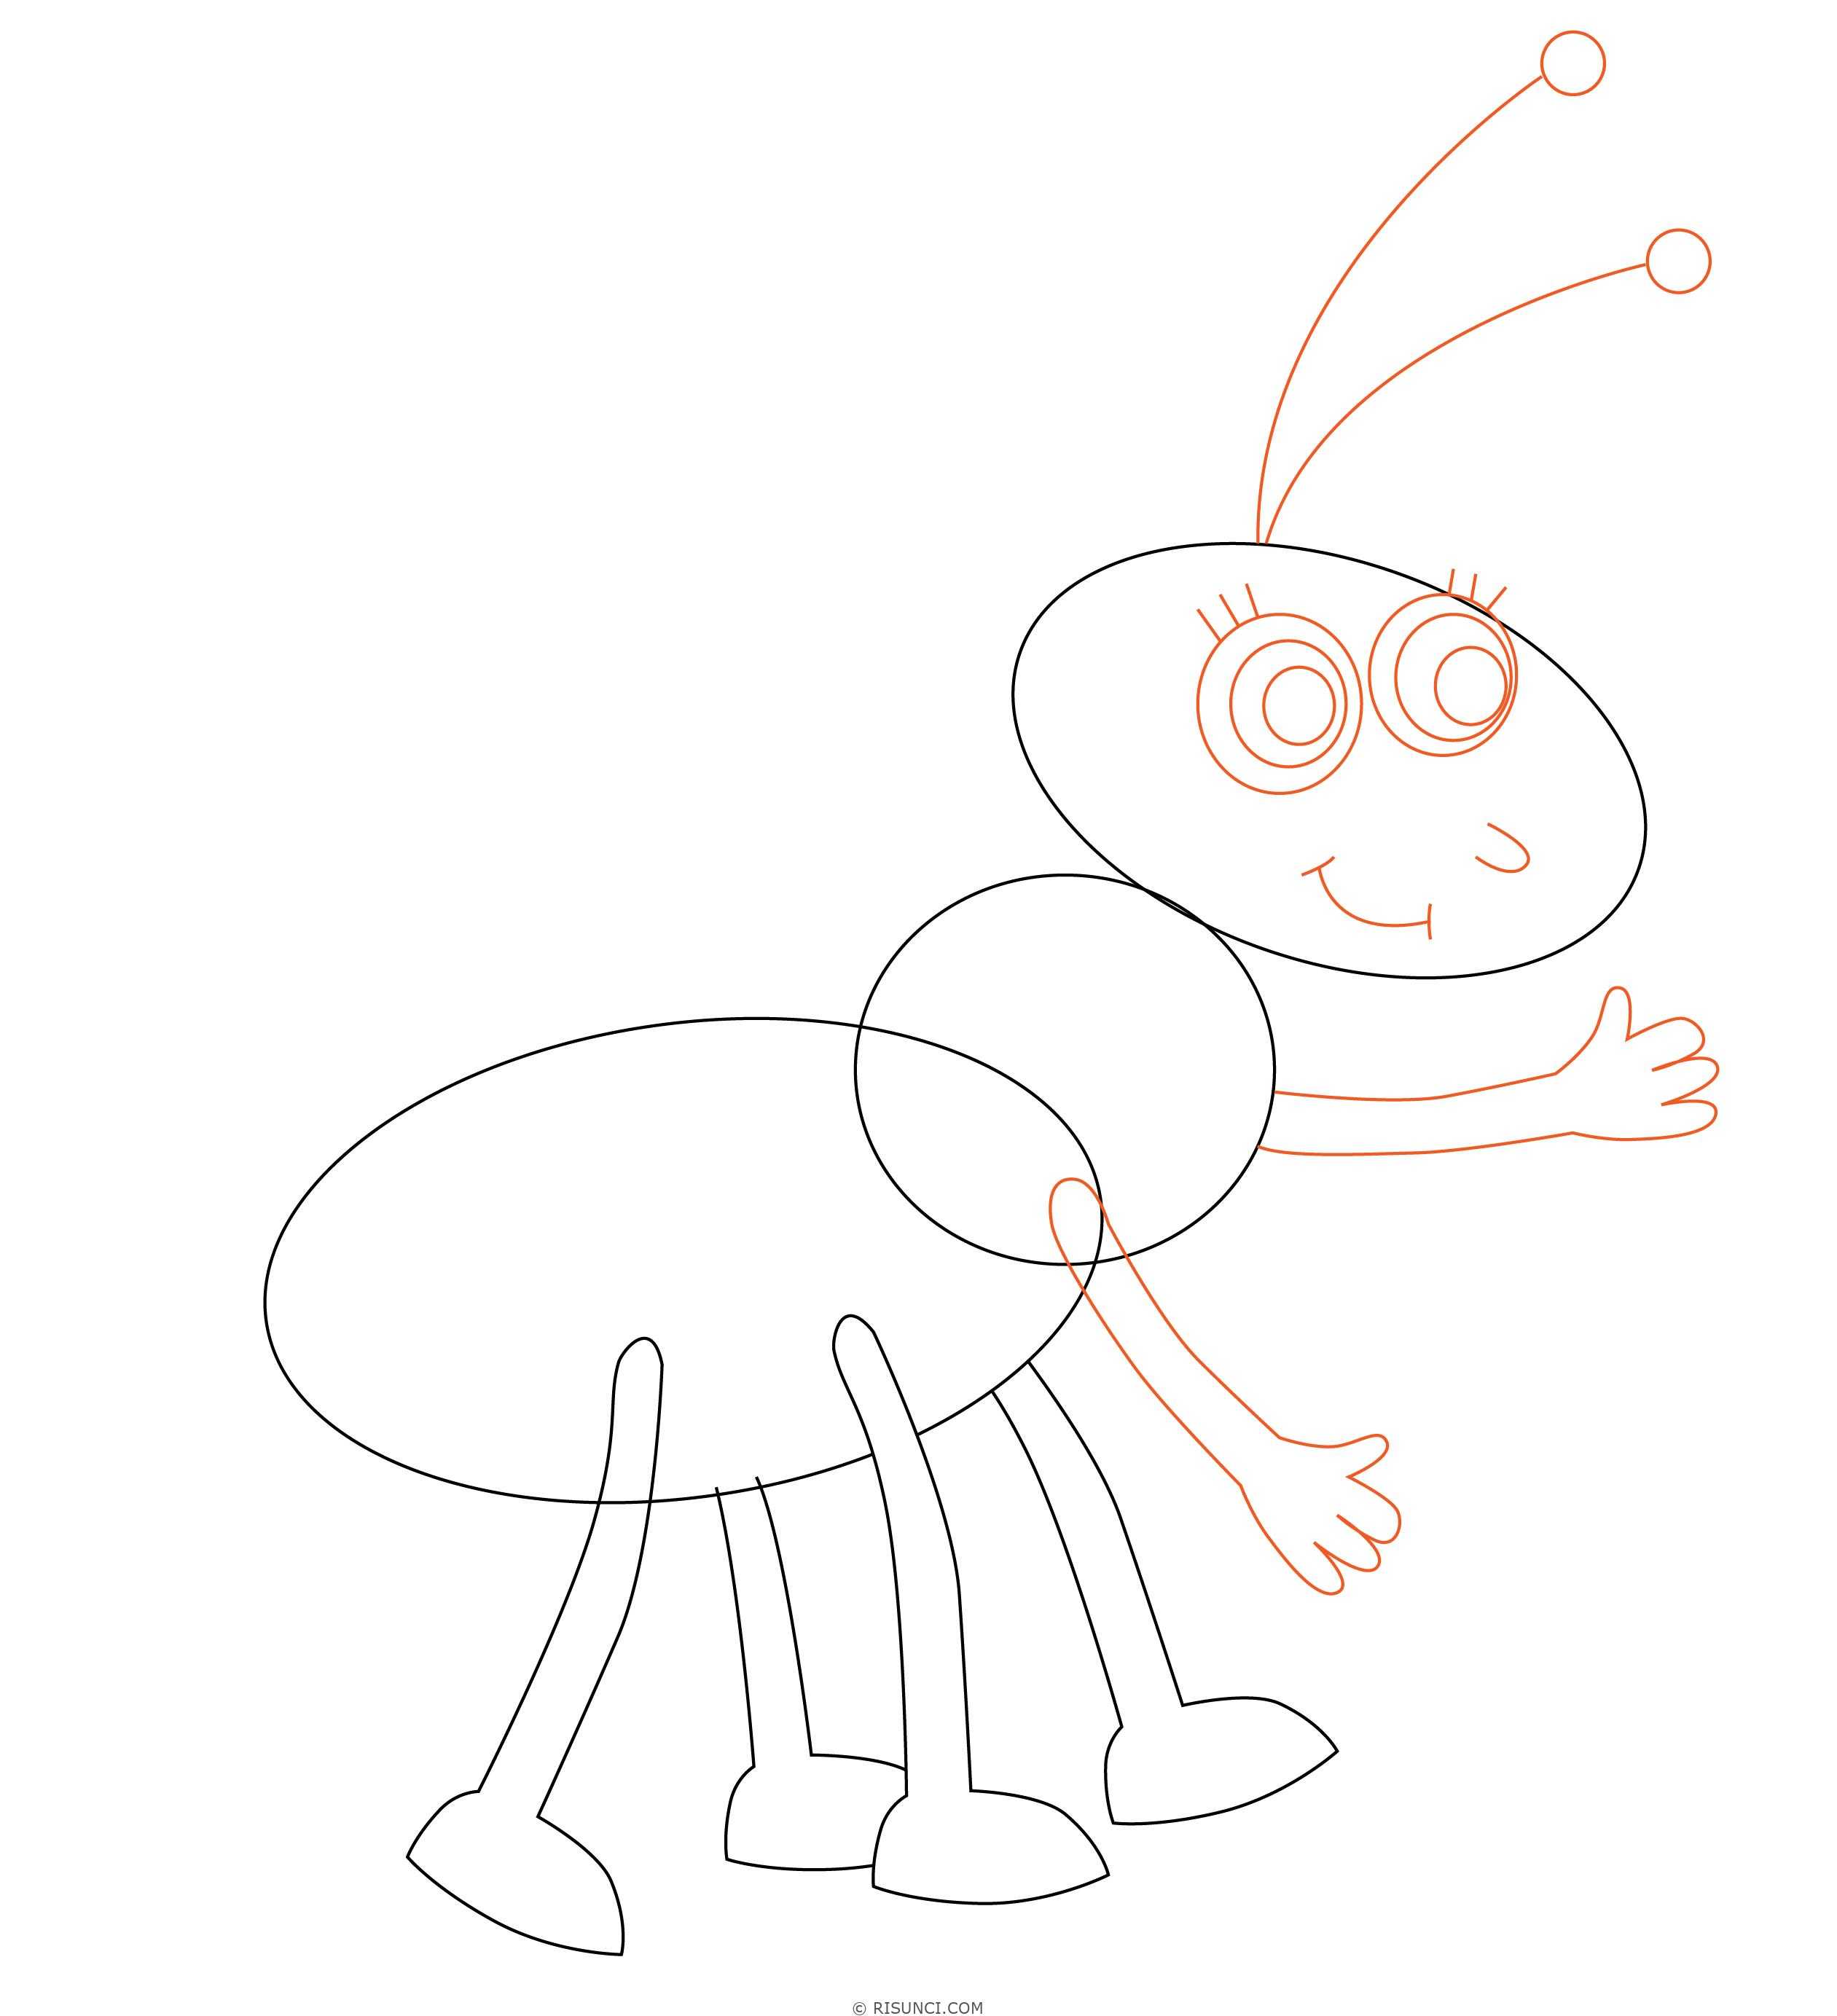 Как нарисовать муравьев пошагово: легкий мастер-класс с описанием, как нарисовать карандашом по инструкции + обзор лучших идей и картинок